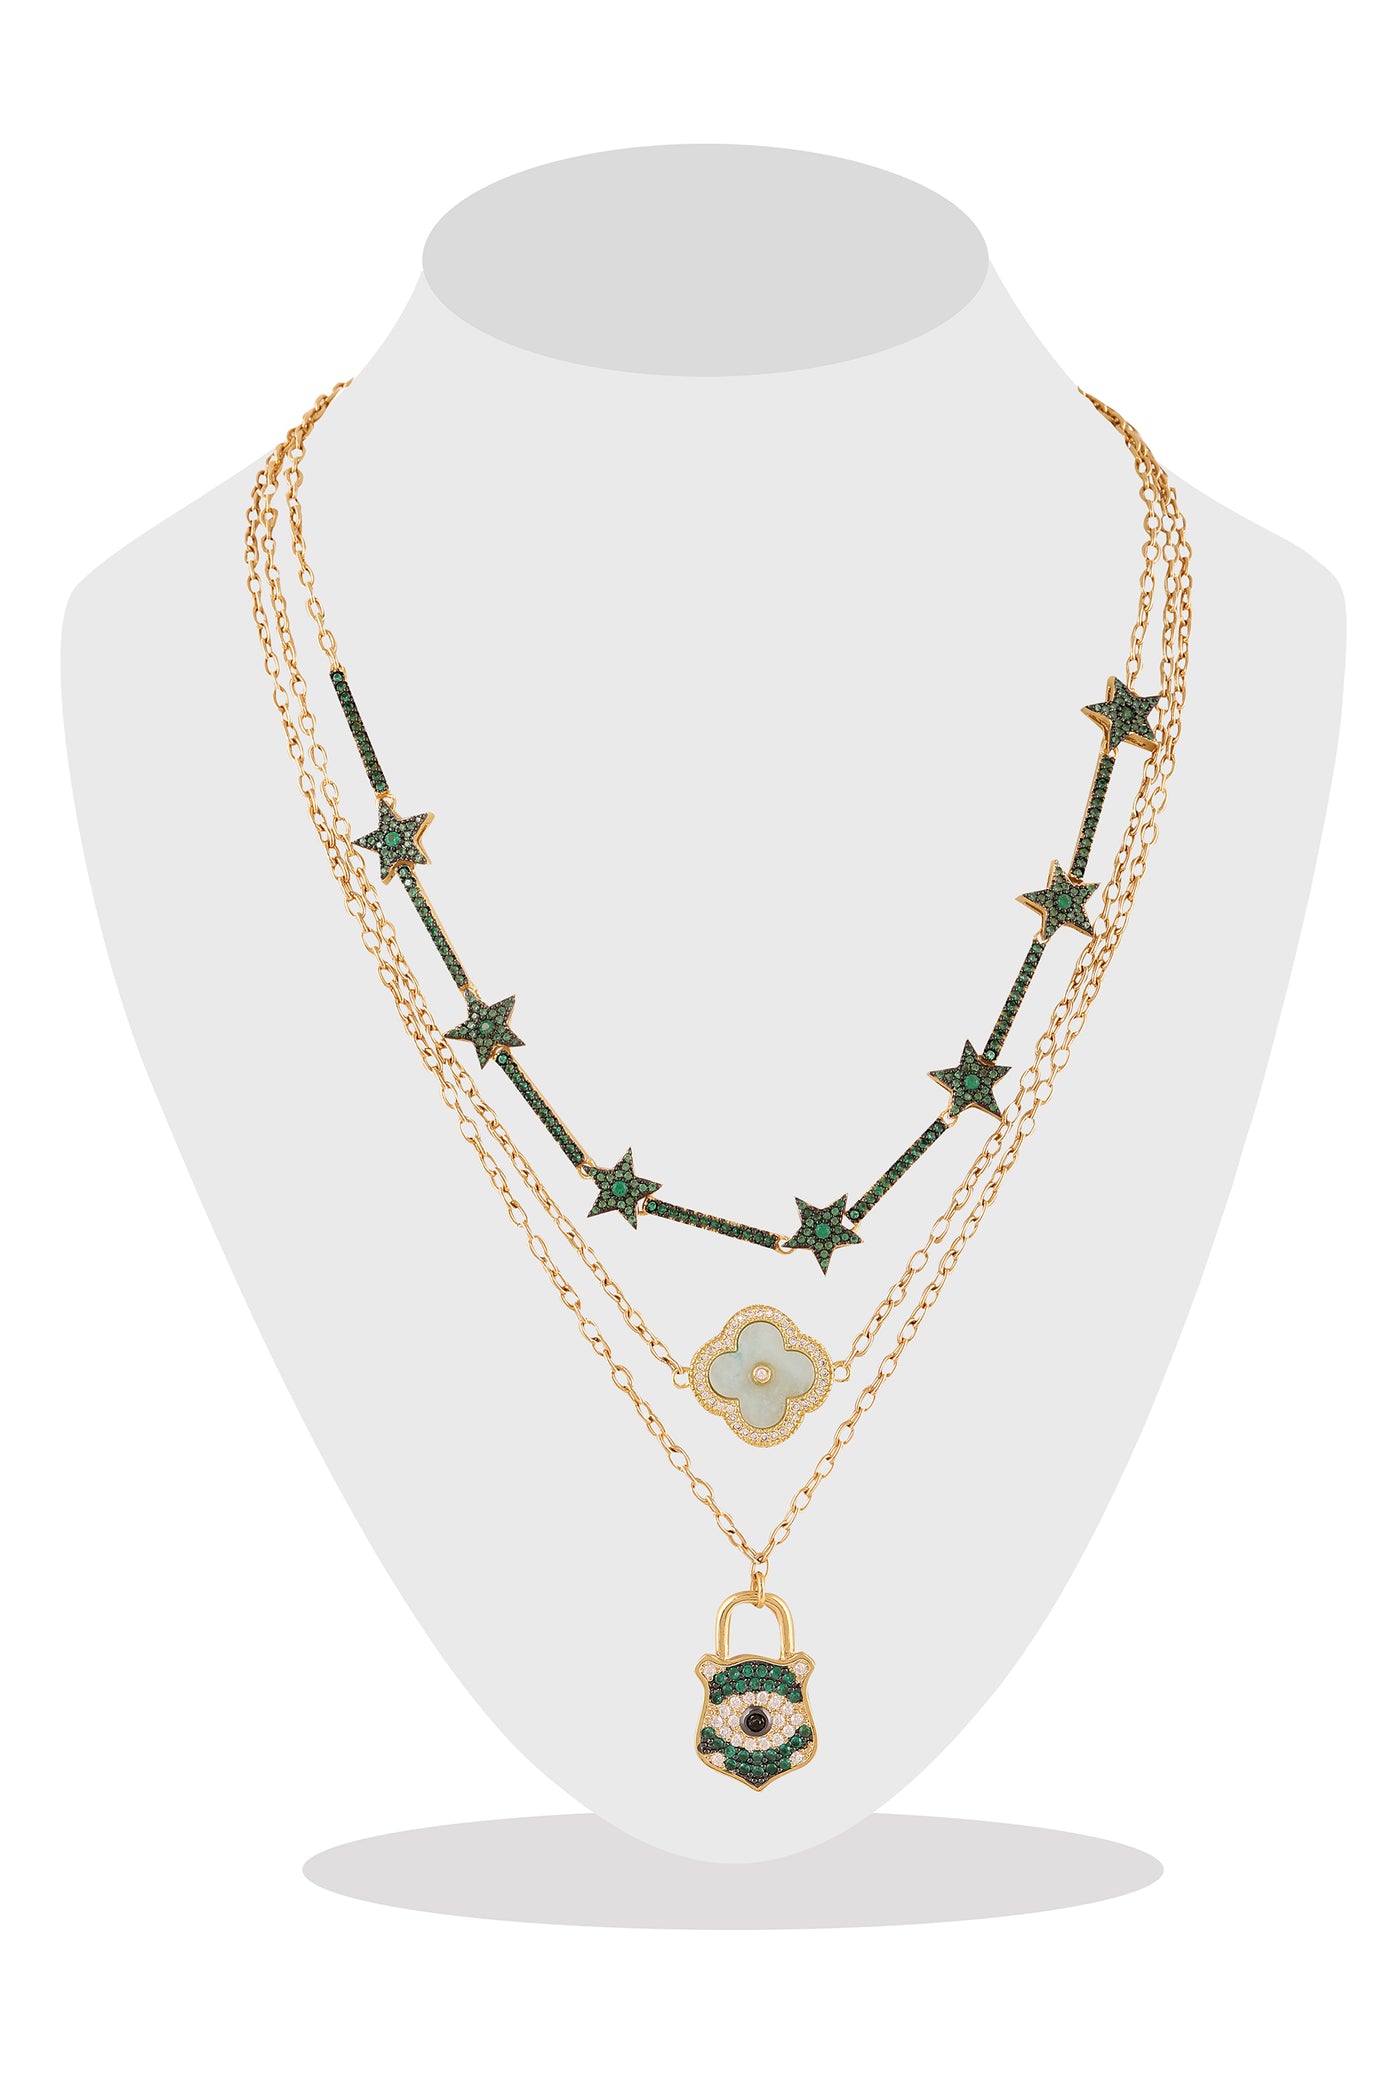 raya jewels Emerald Layered Necklace fashion jewellery online shopping melange singapore indian designer wear